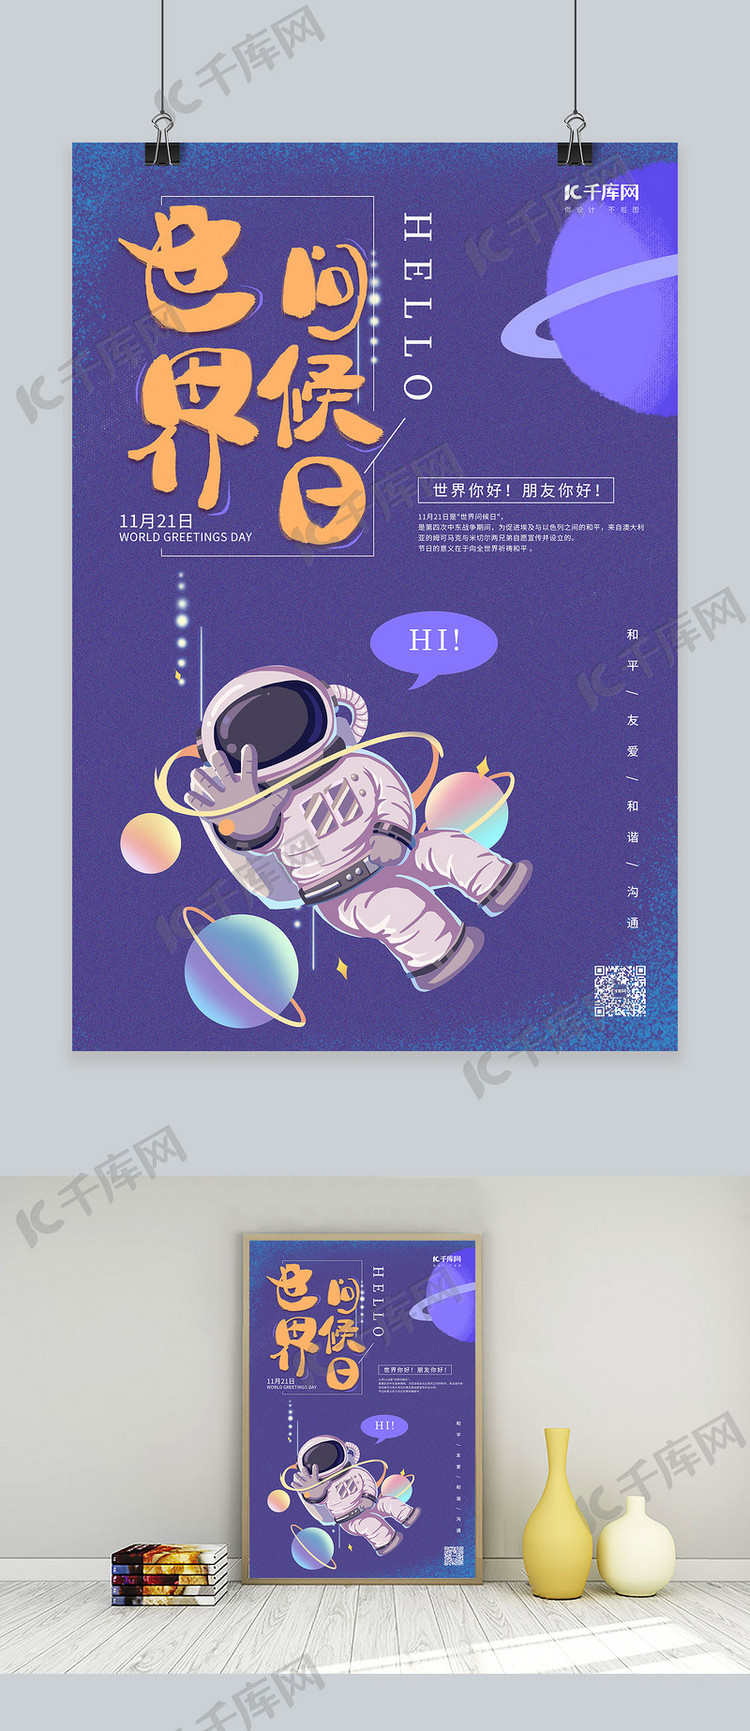 世界问候日宇航员紫色卡通海报